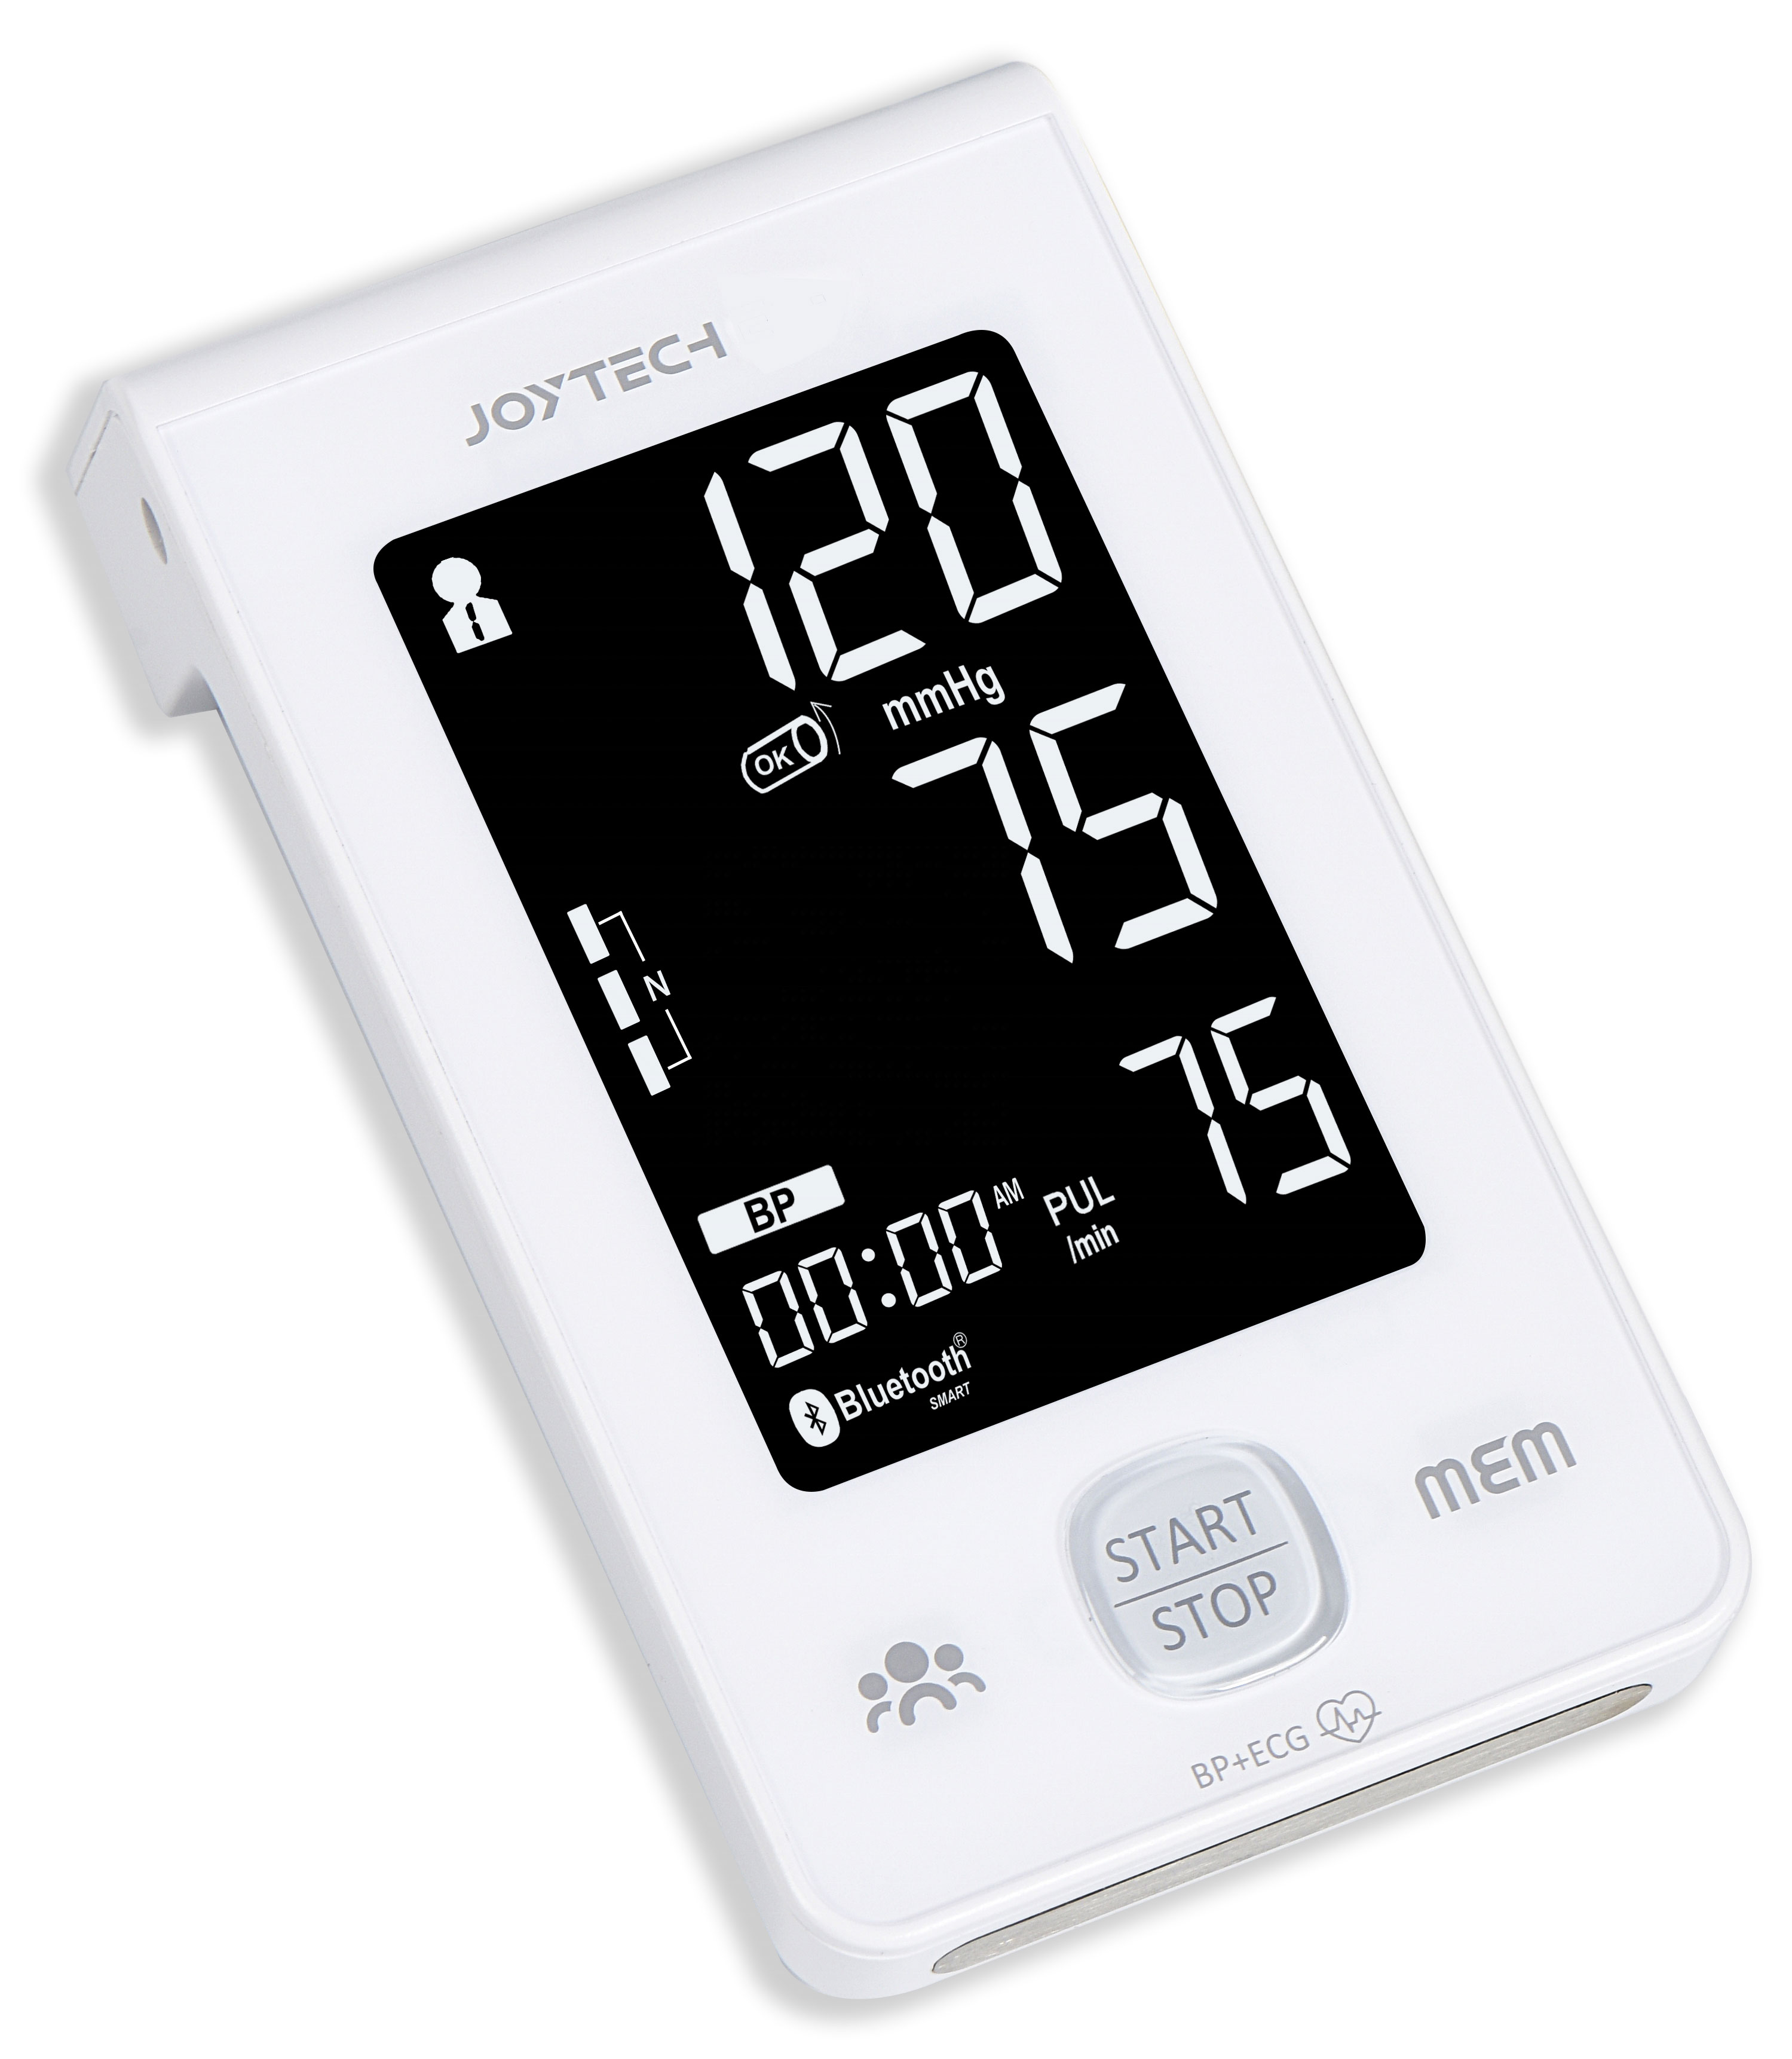 Labing Dako nga Display Dual Power Supply Intelligent Blood Pressure Monitor nga adunay Ecg